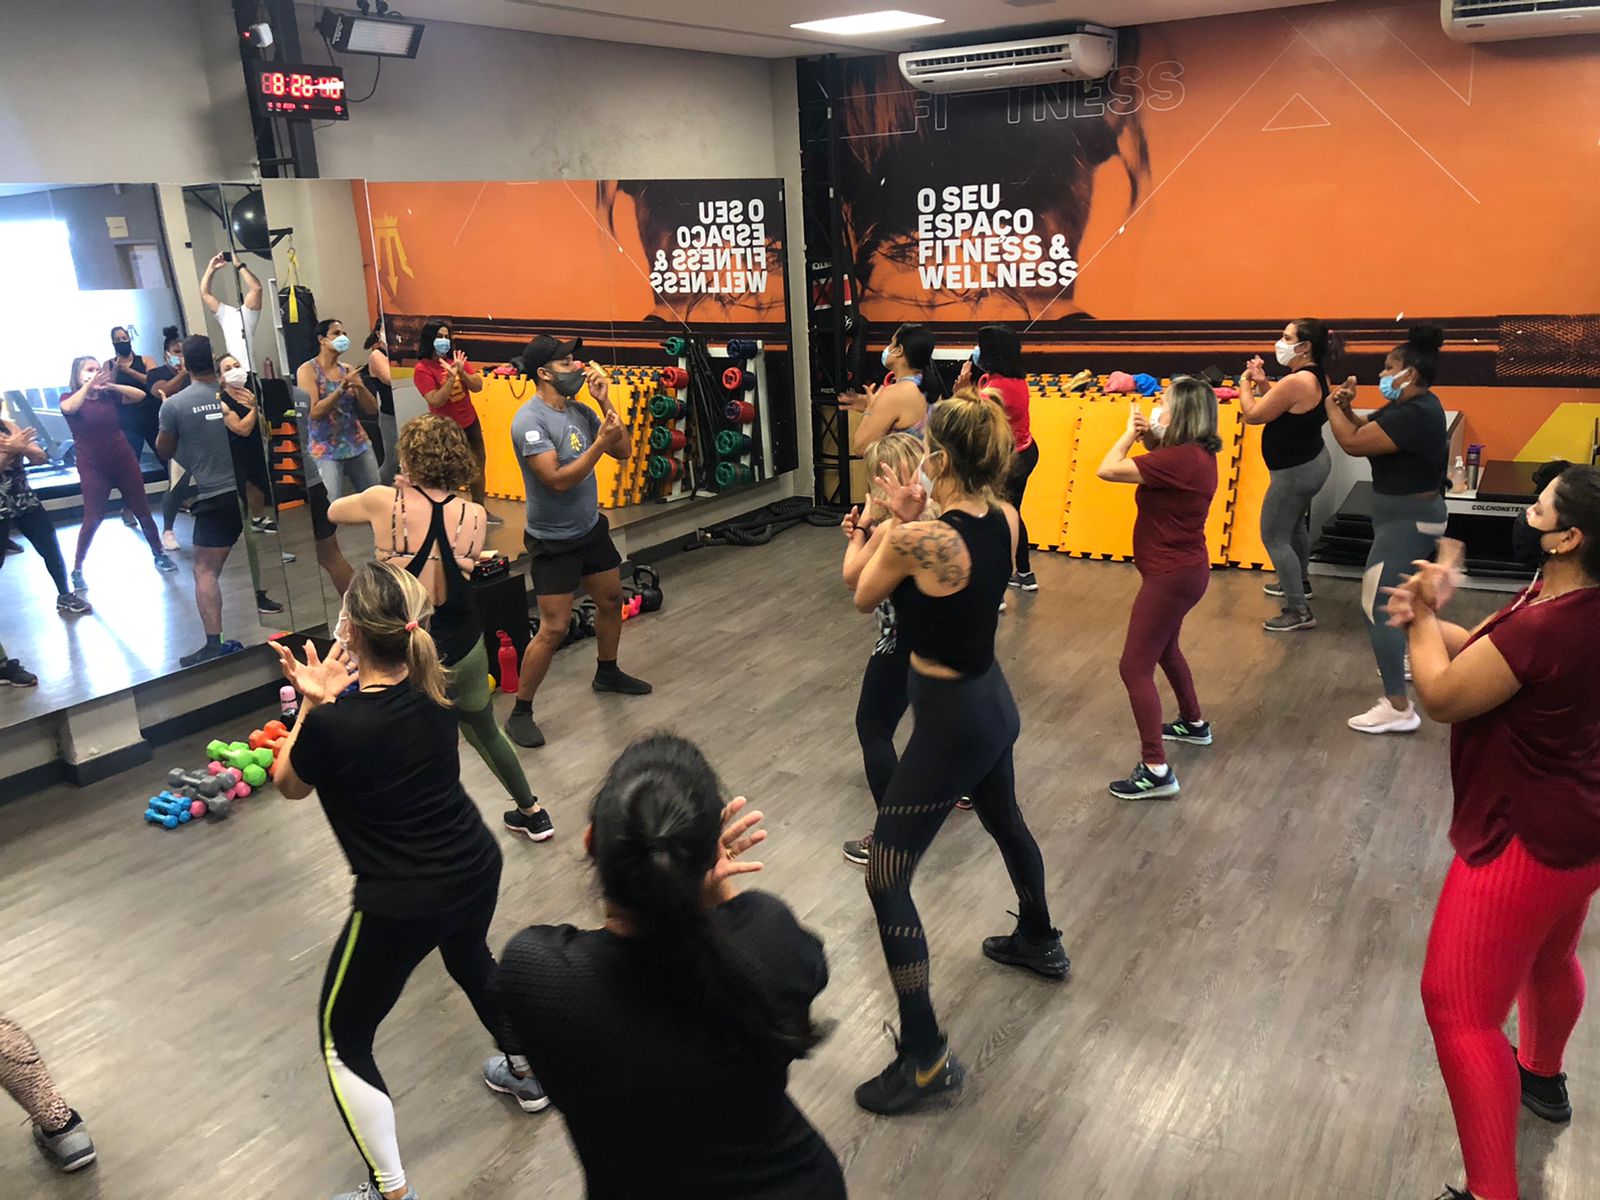  ZUMBA 45′ |  Modalidade Prem1um Fitness | Academia em Maceió | O seu espaço fitness e wellness em Maceió